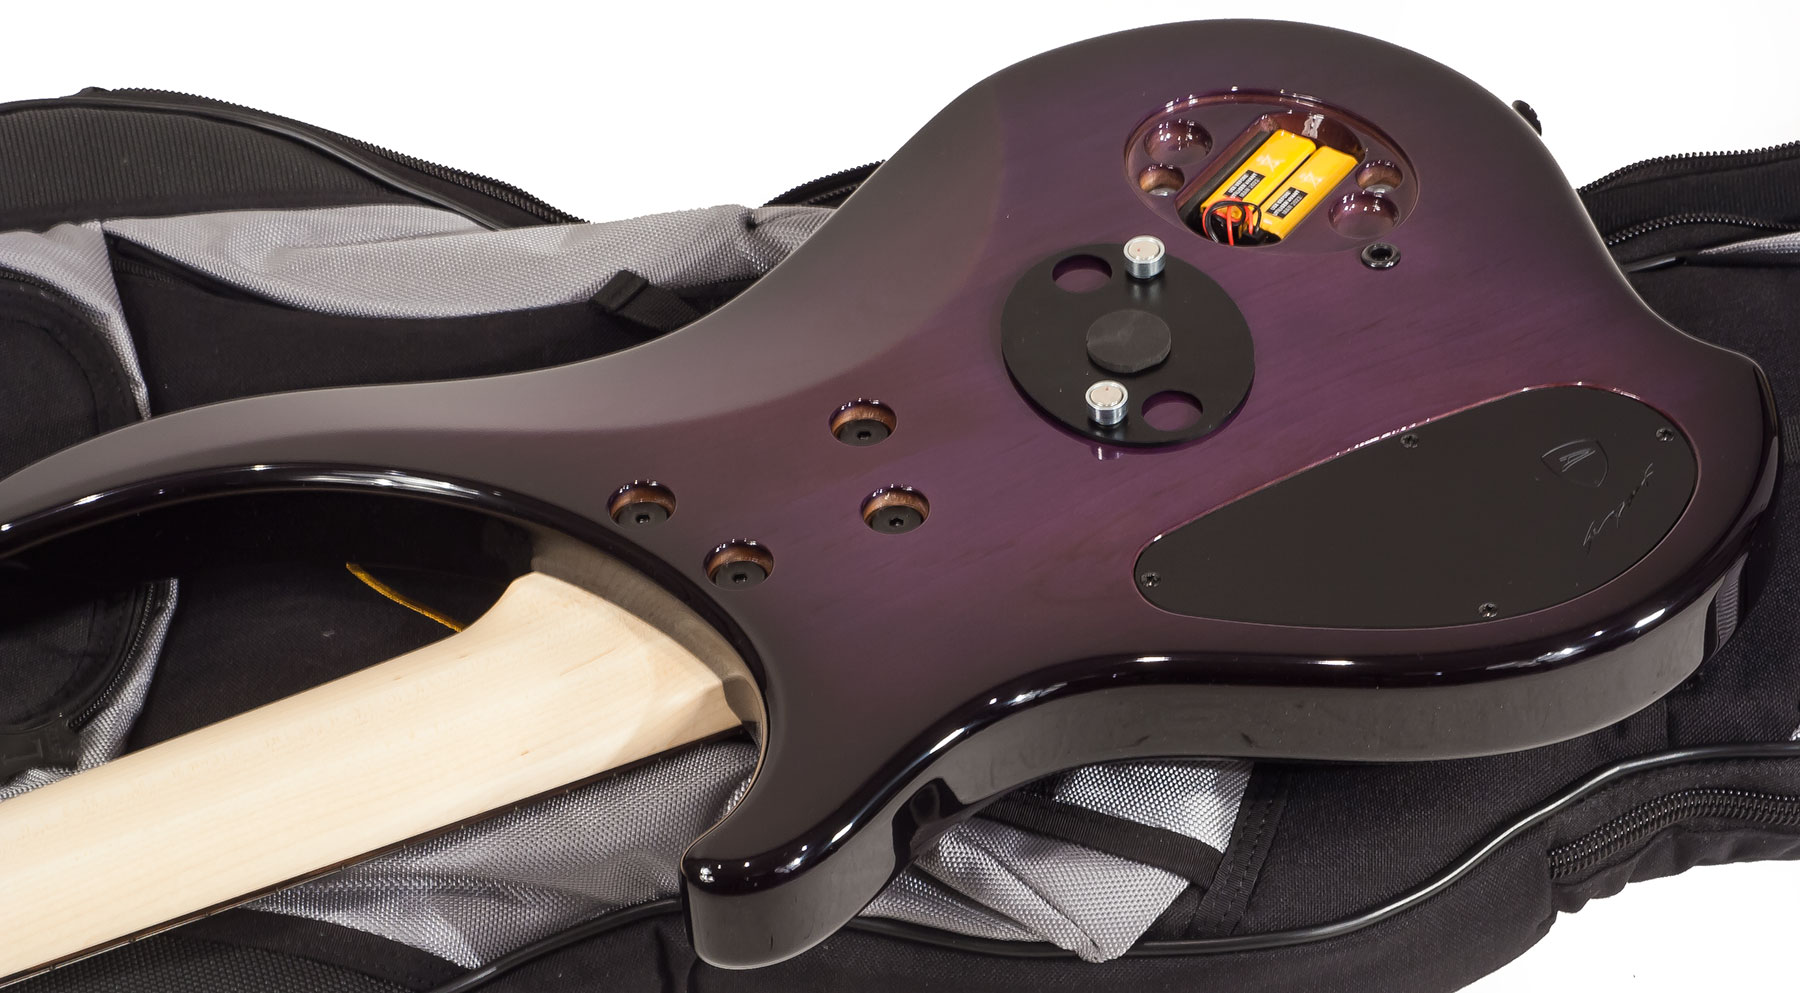 Dingwall Afterburner I 5 2-pickups Wen +housse - Purple Blackburst - Solid body electric bass - Variation 3